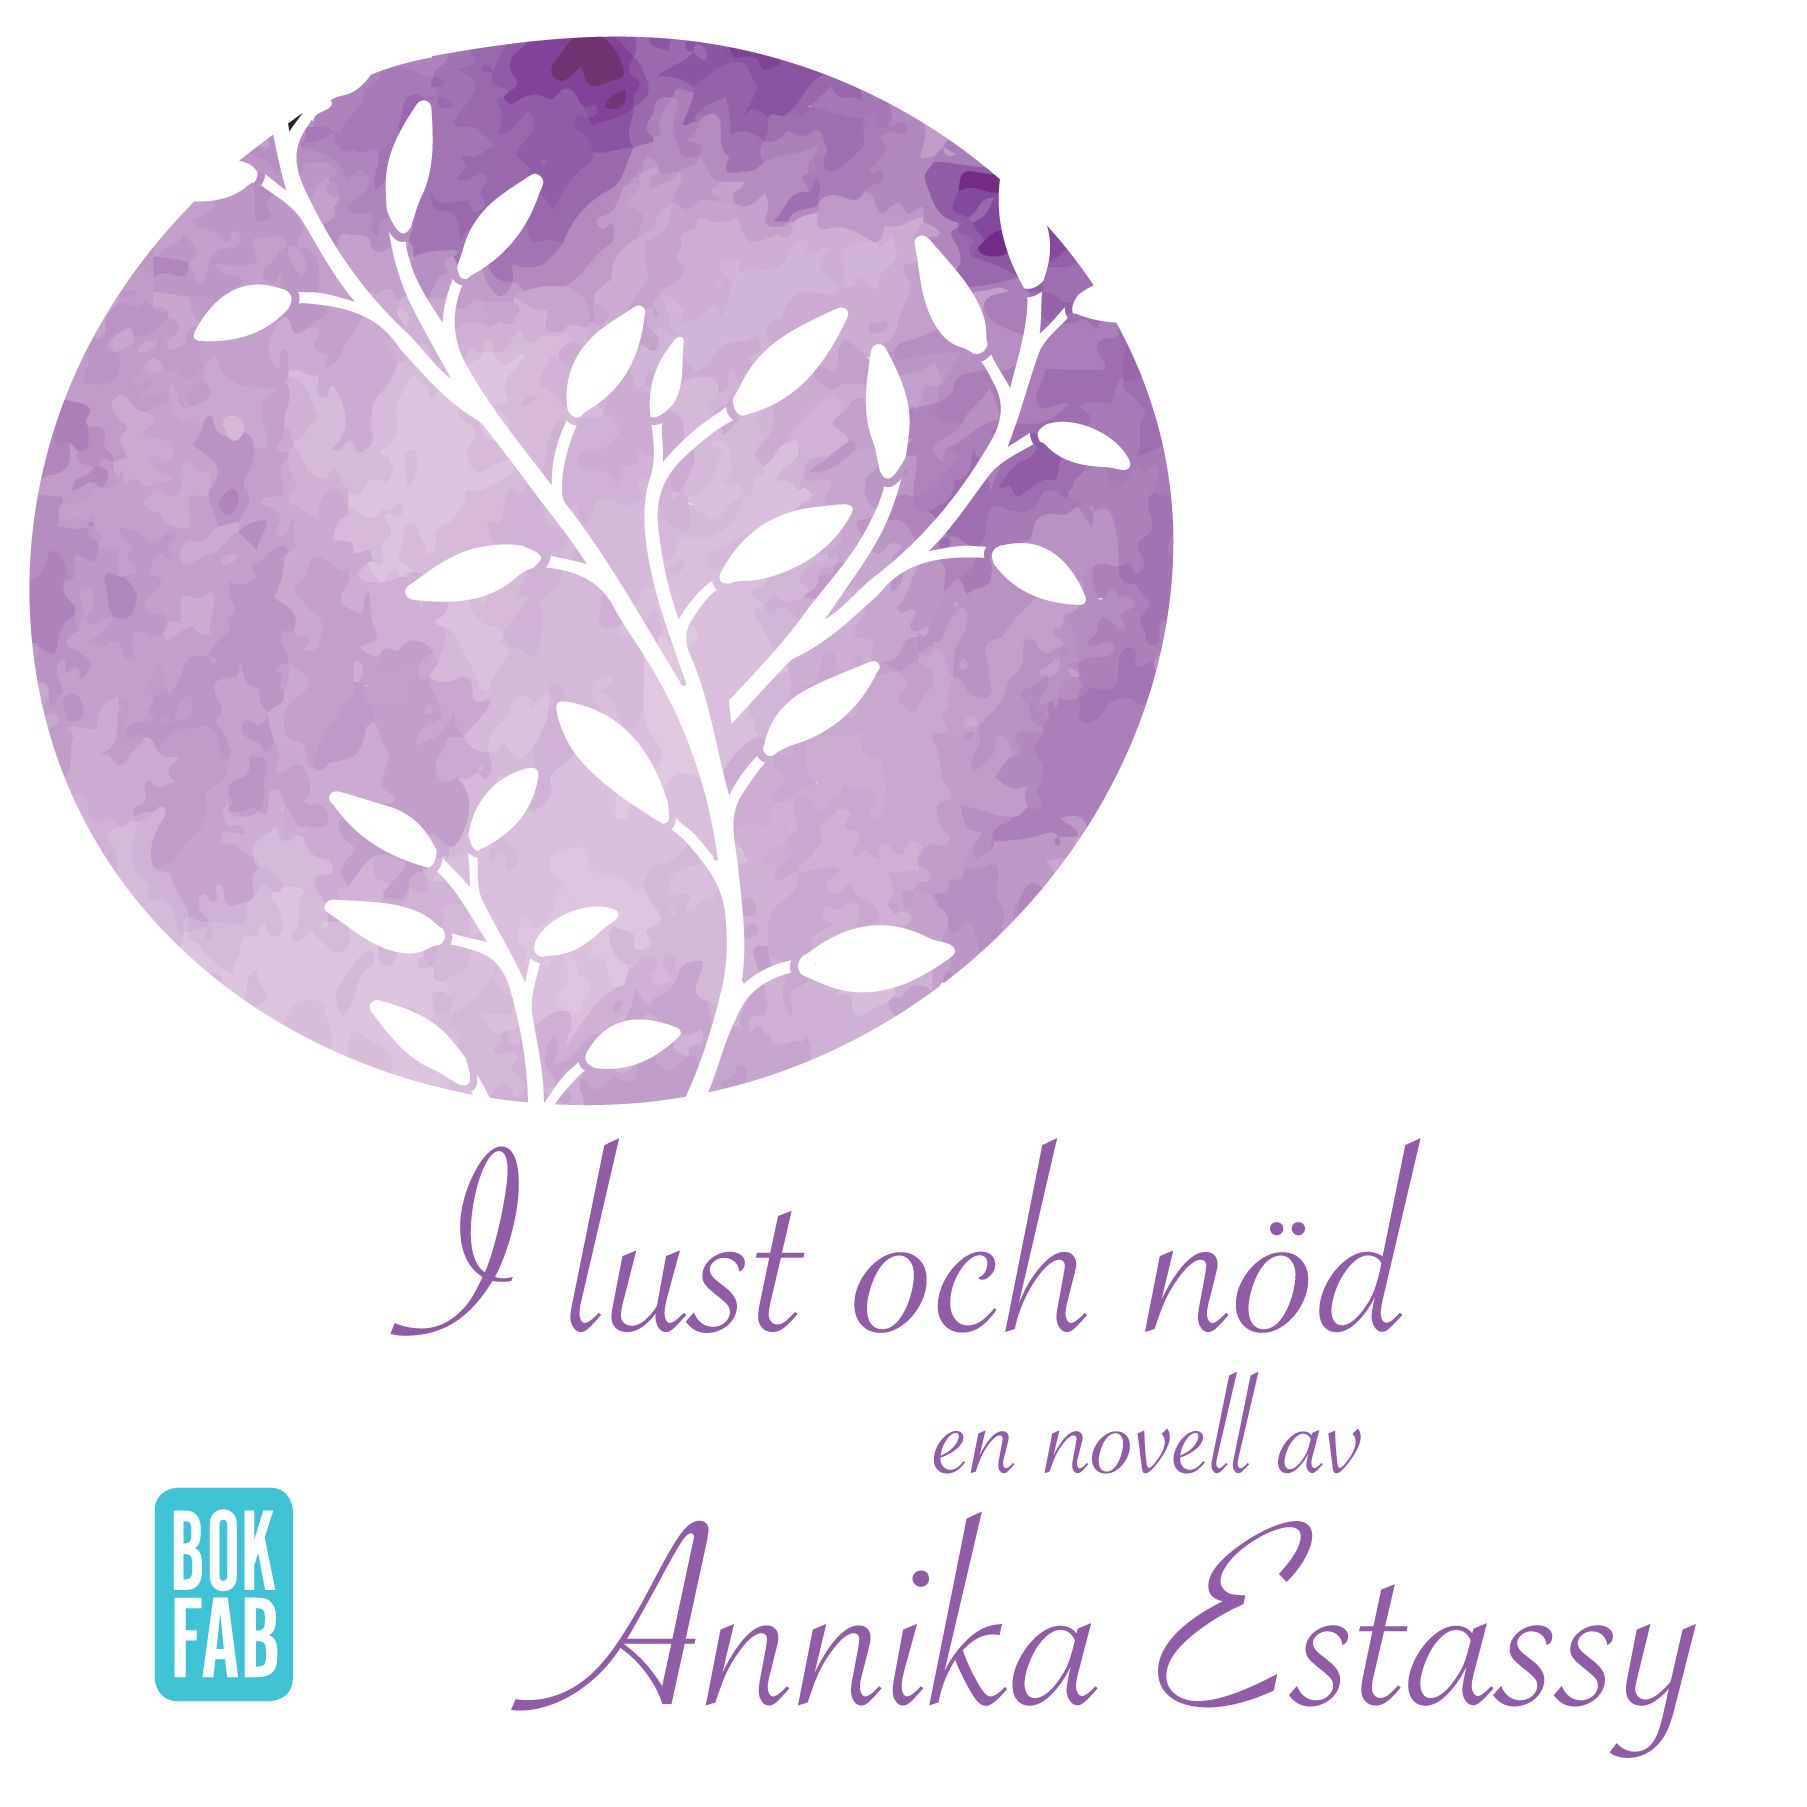 I lust och nöd, ljudbok av Annika Estassy